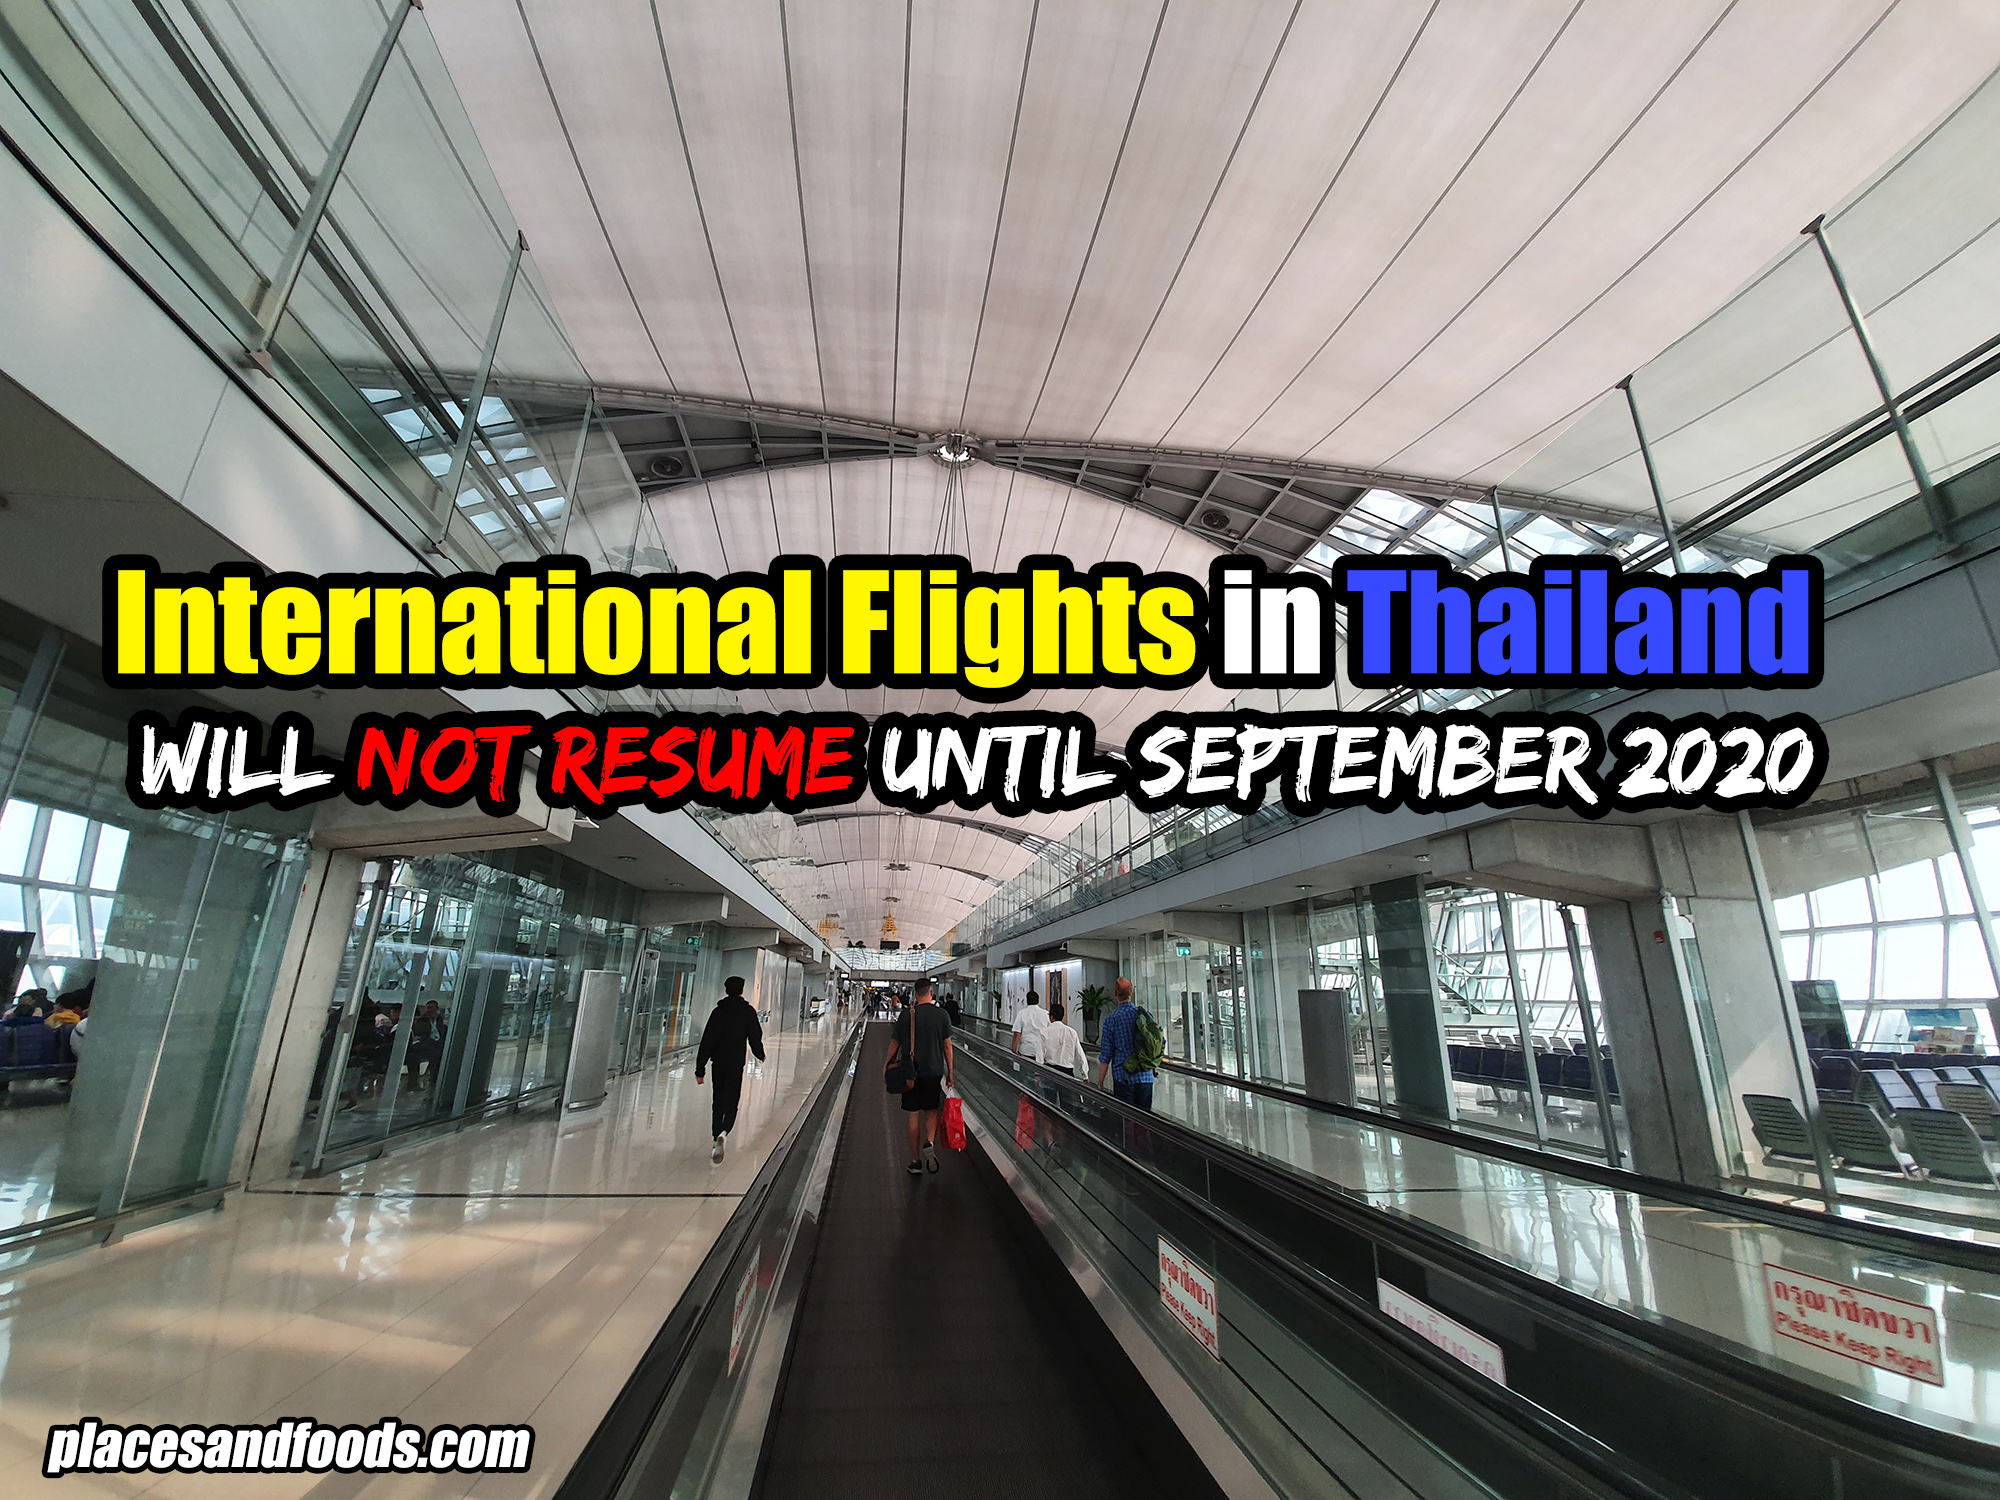 International Flights in Thailand will not resume until September